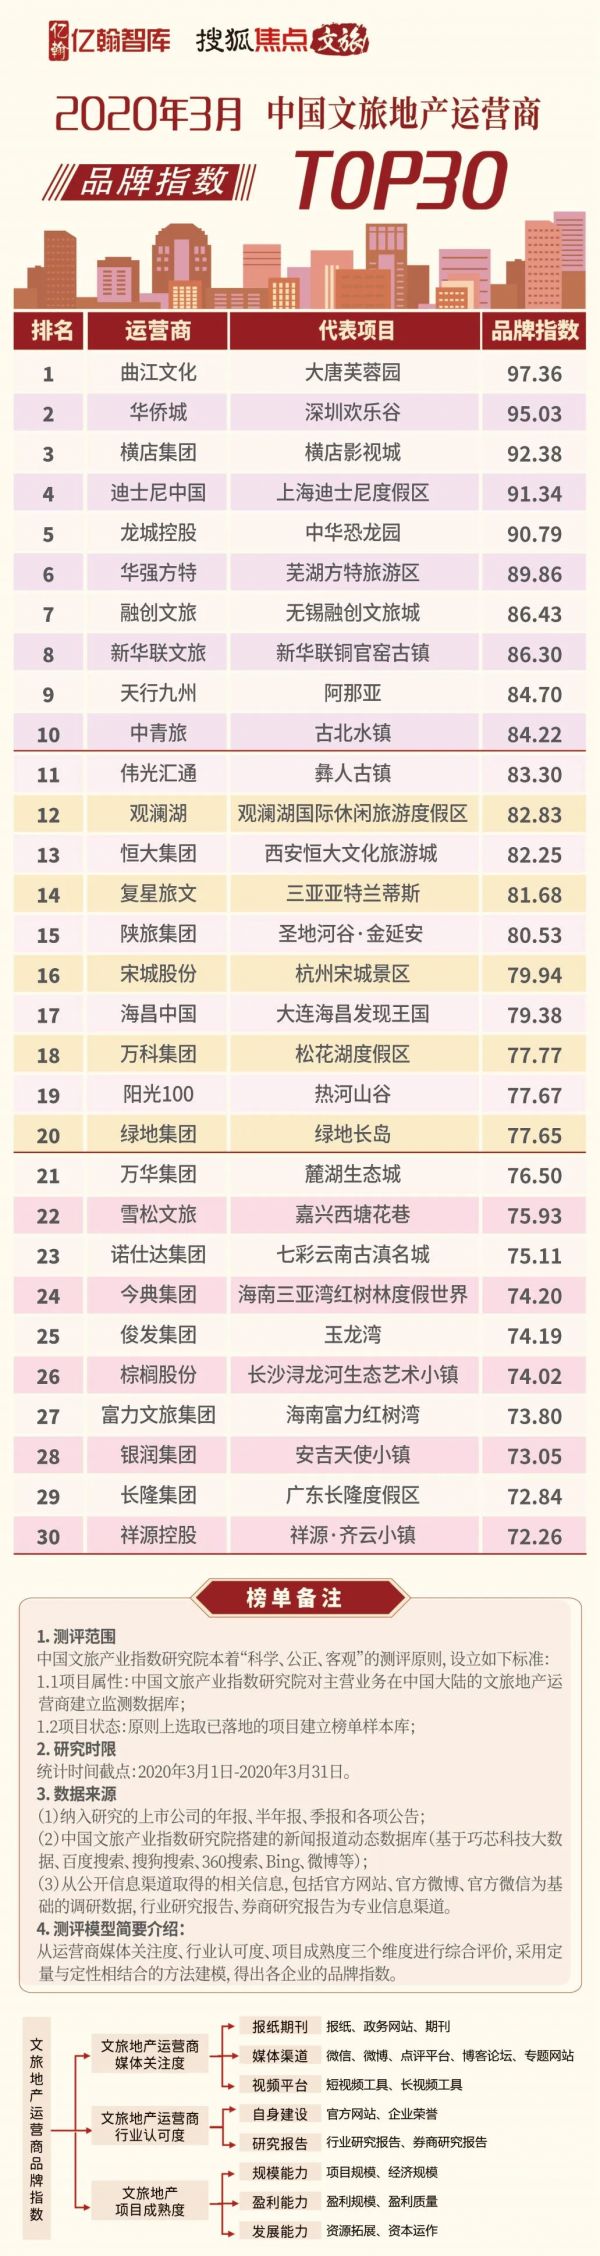 2020年3月中国文旅地产运营商品牌指数TOP30